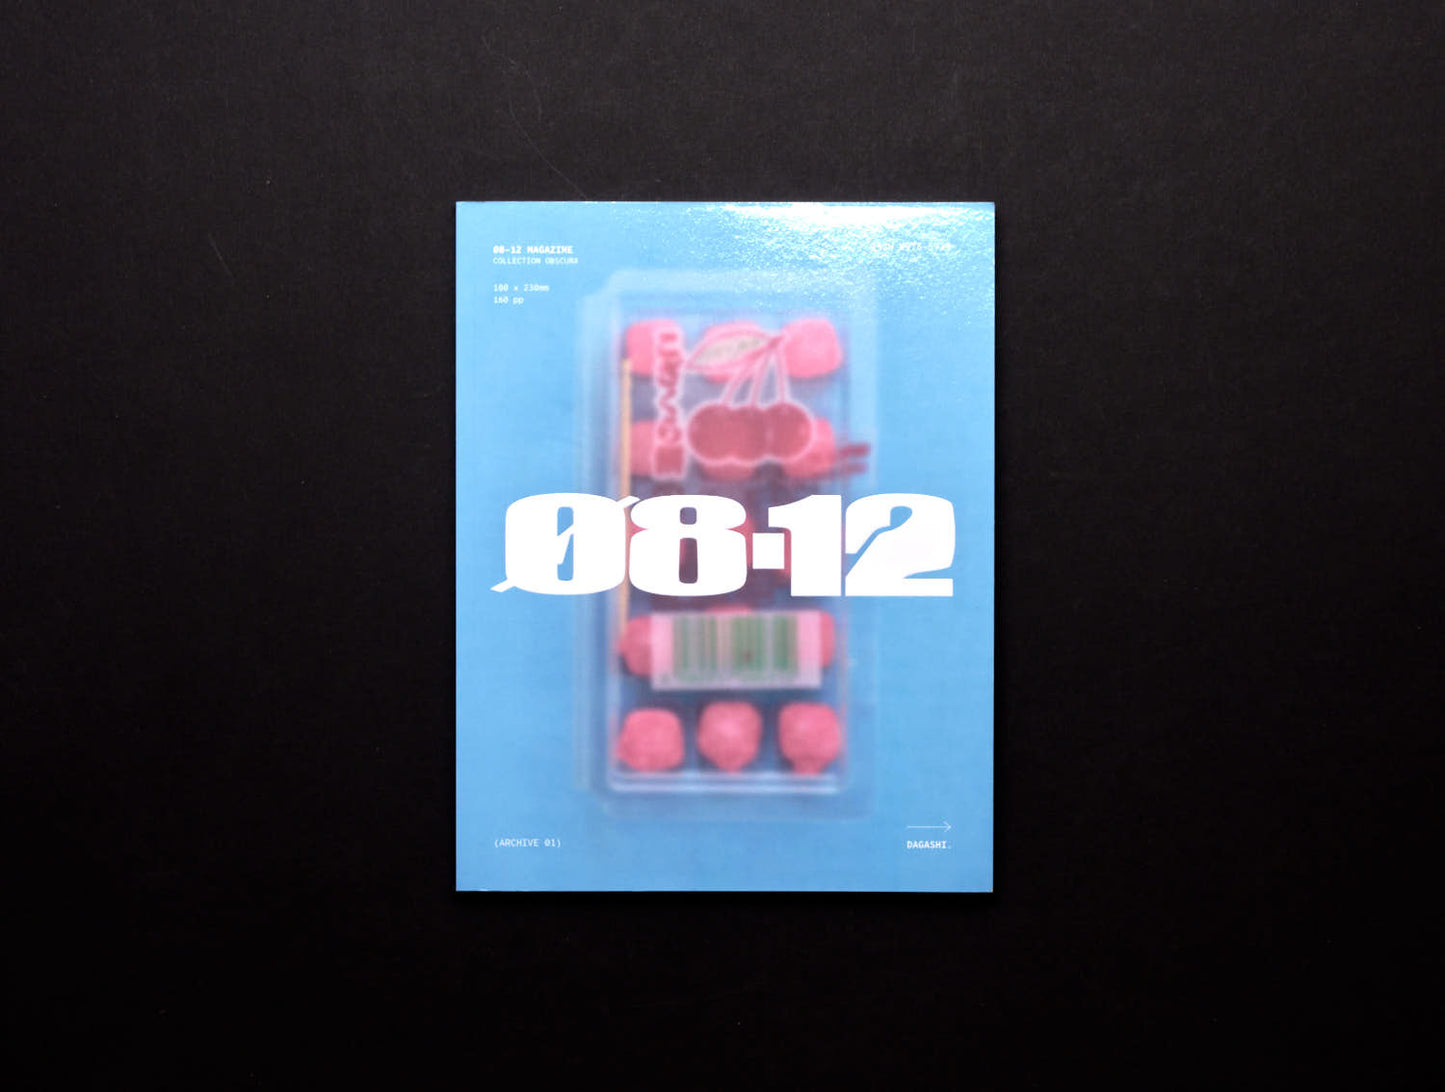 Ø8-12, Issue 01- DAGASHI